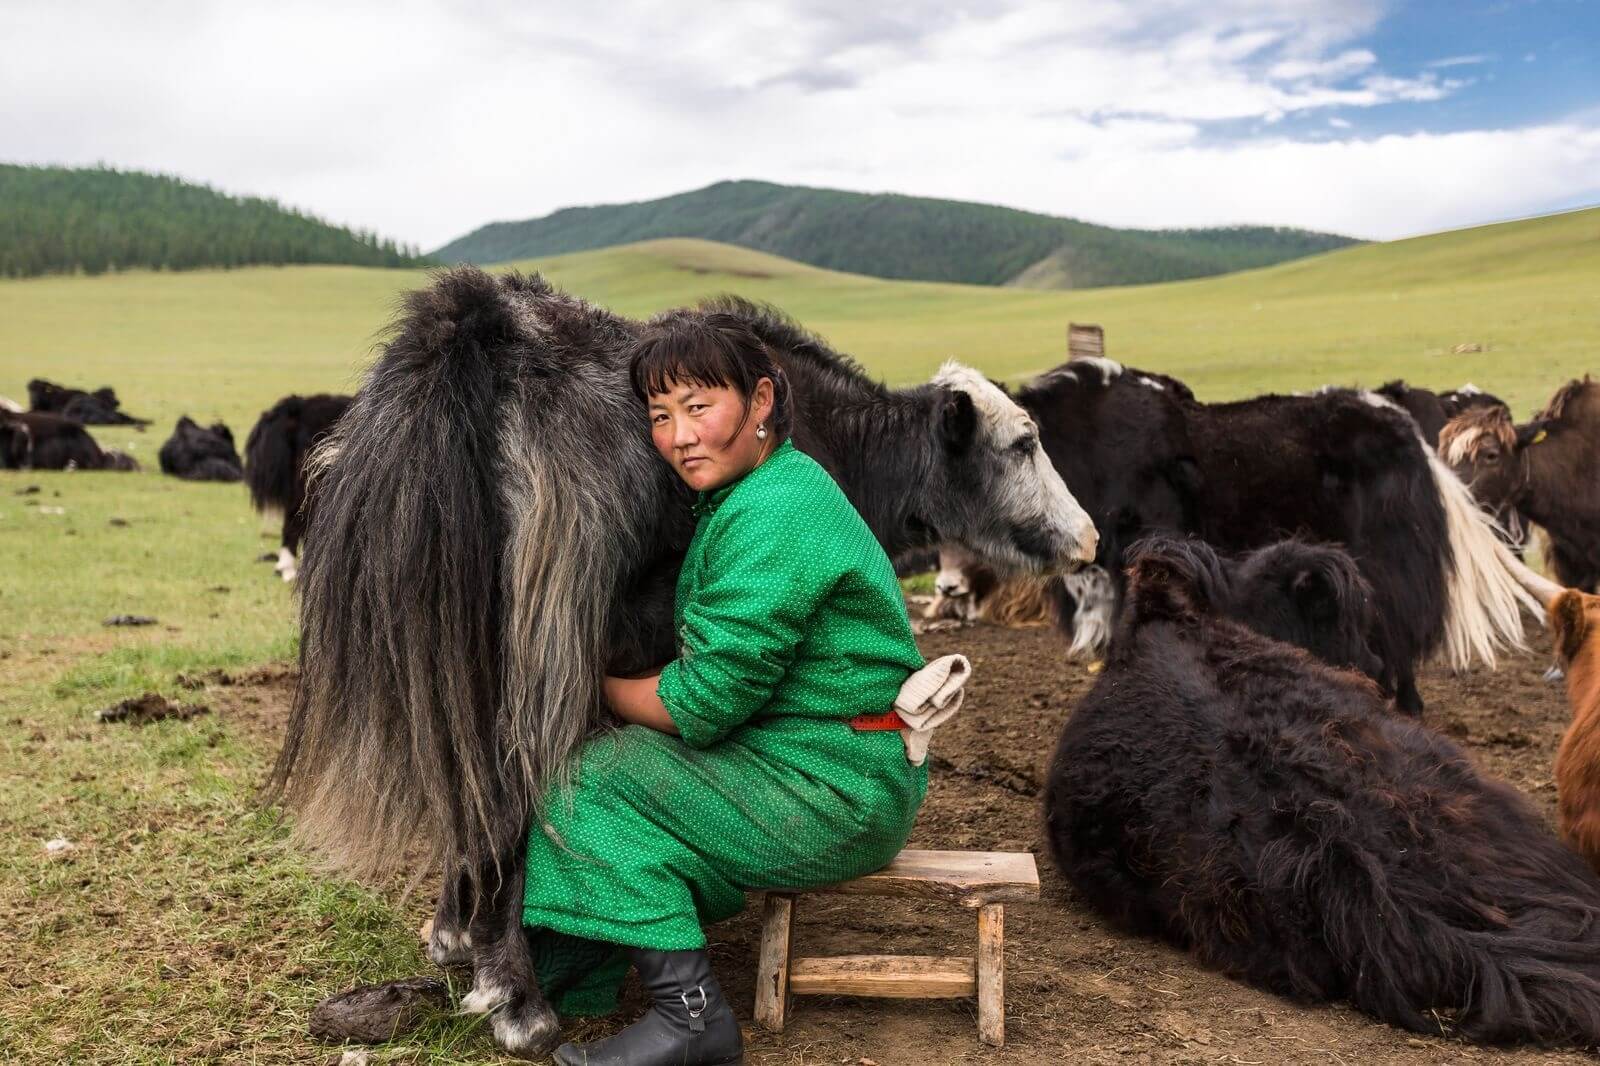 عکس زندگی روستایی زن مغول,تصویر زندگی روستایی زن مغول,عکس دوشیدن شیر توسط زن مغول